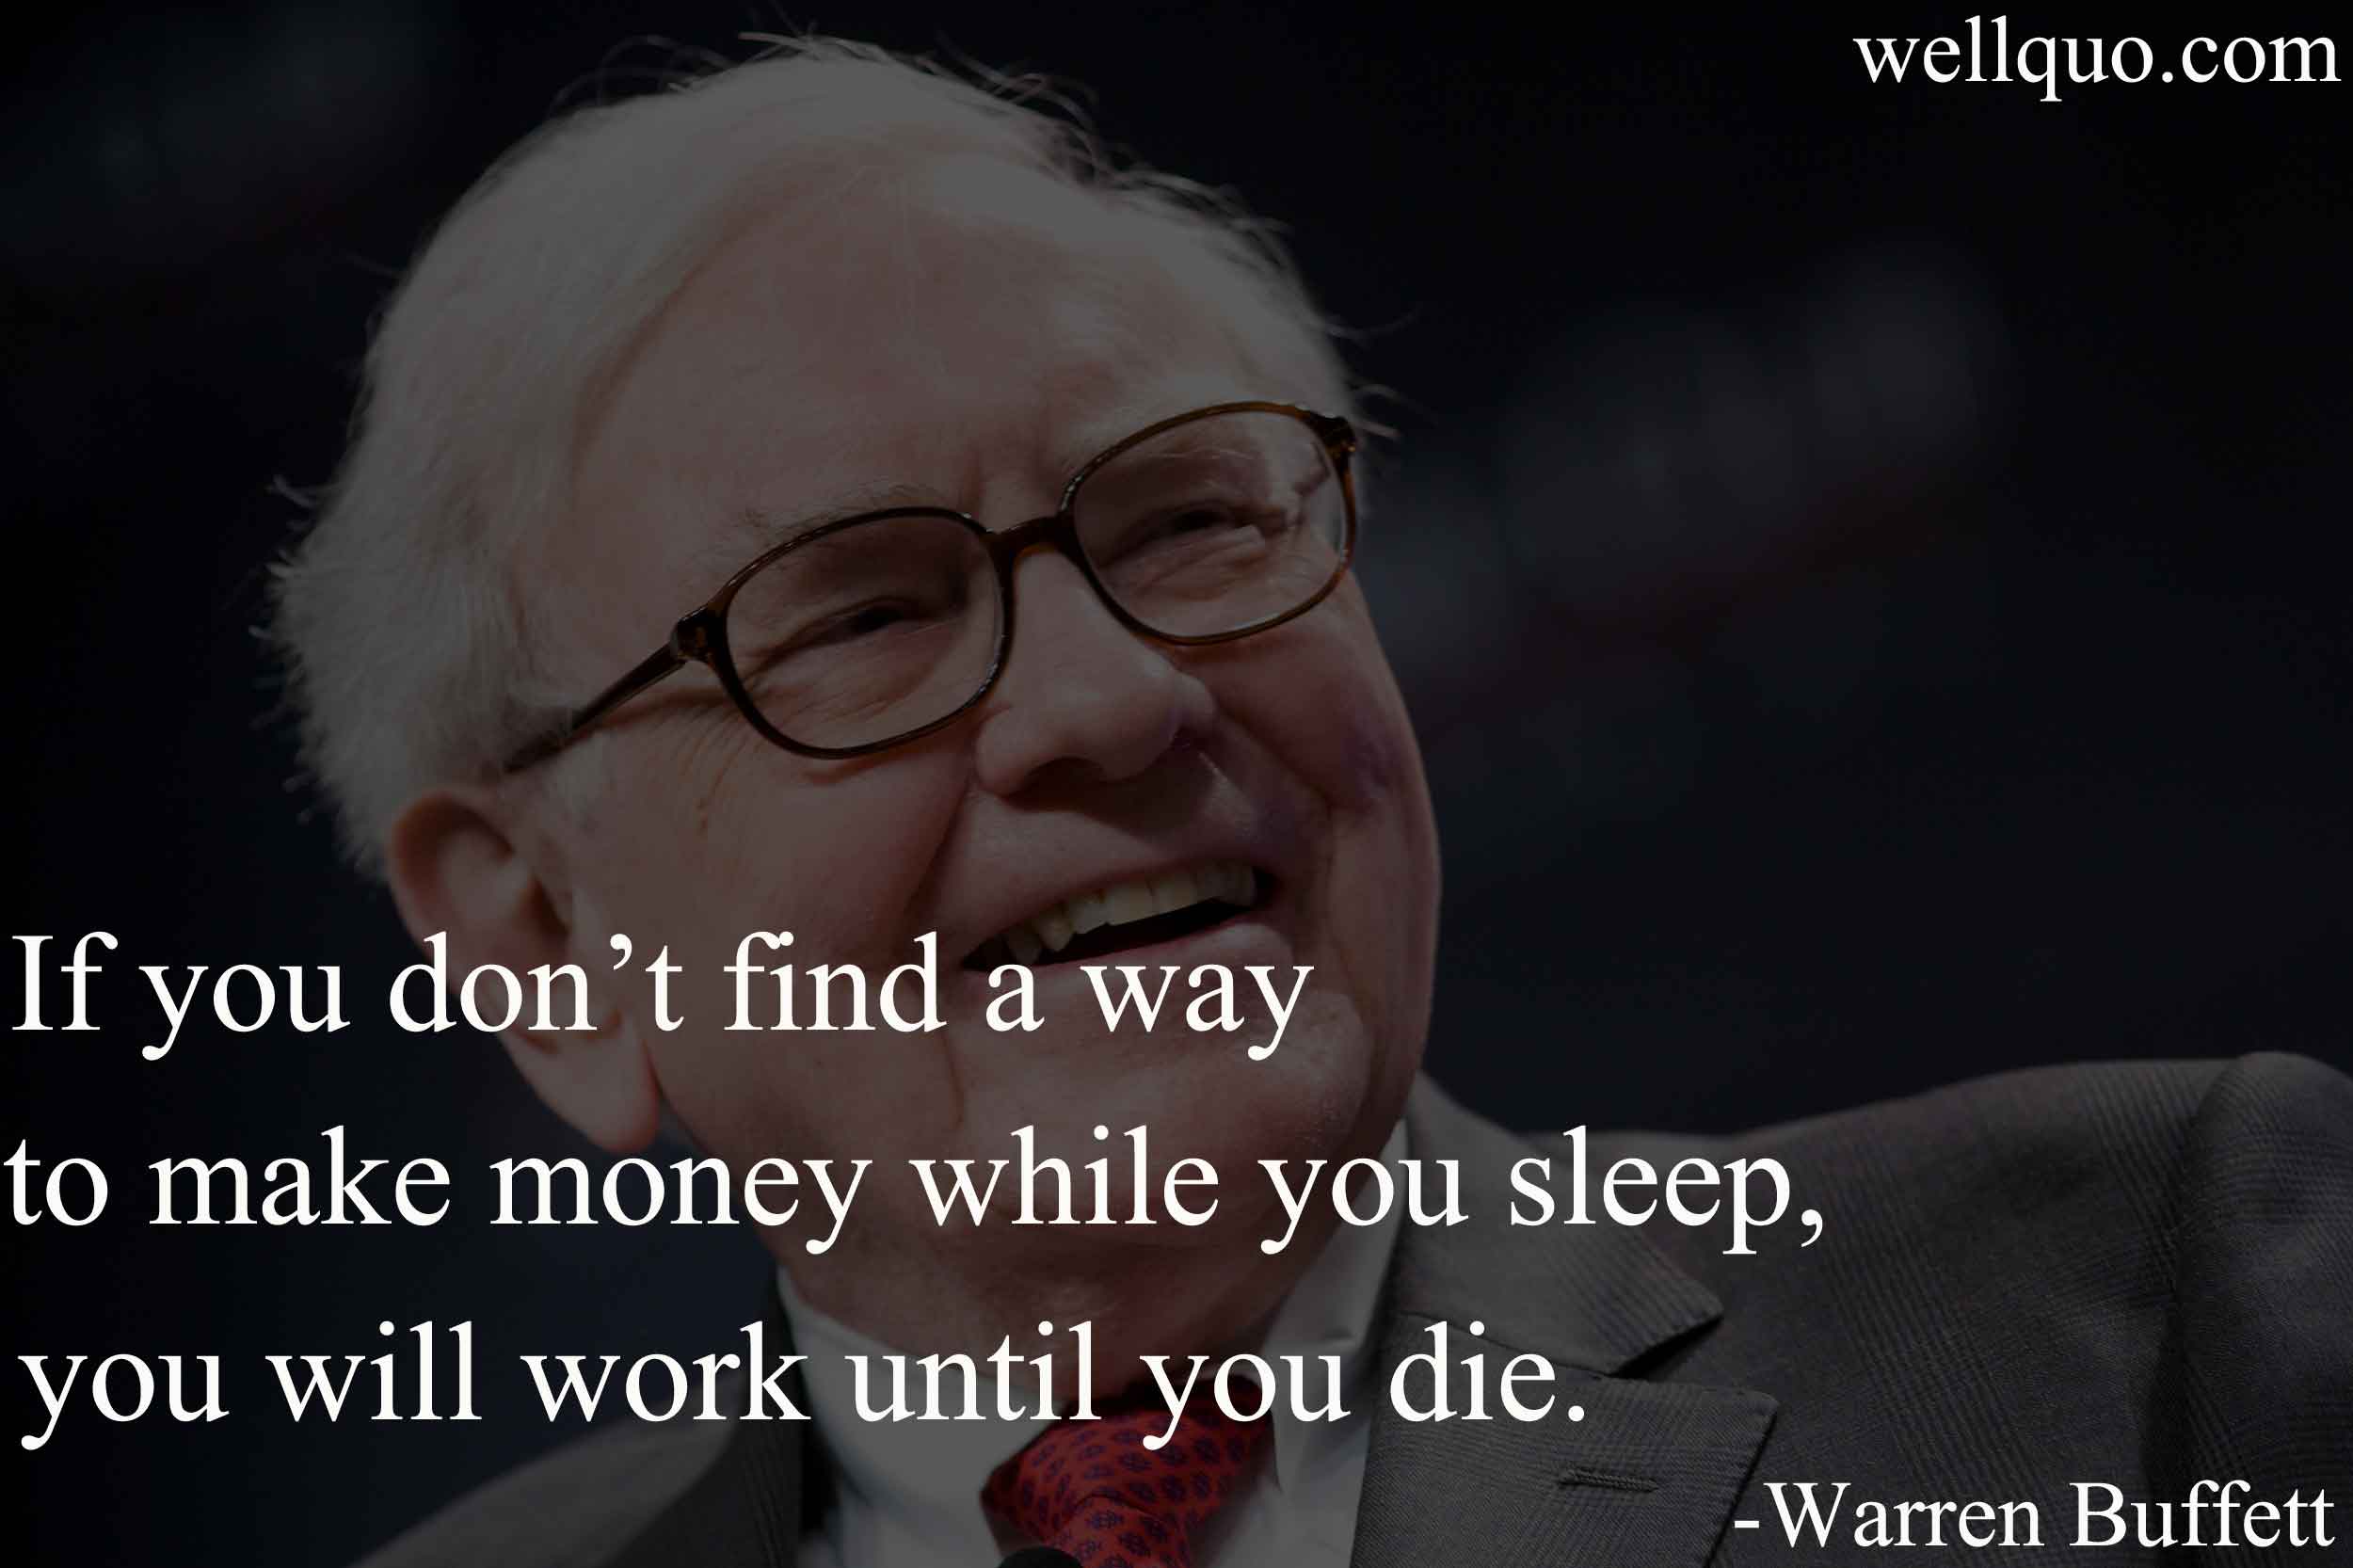 Warren Buffett quote on making money